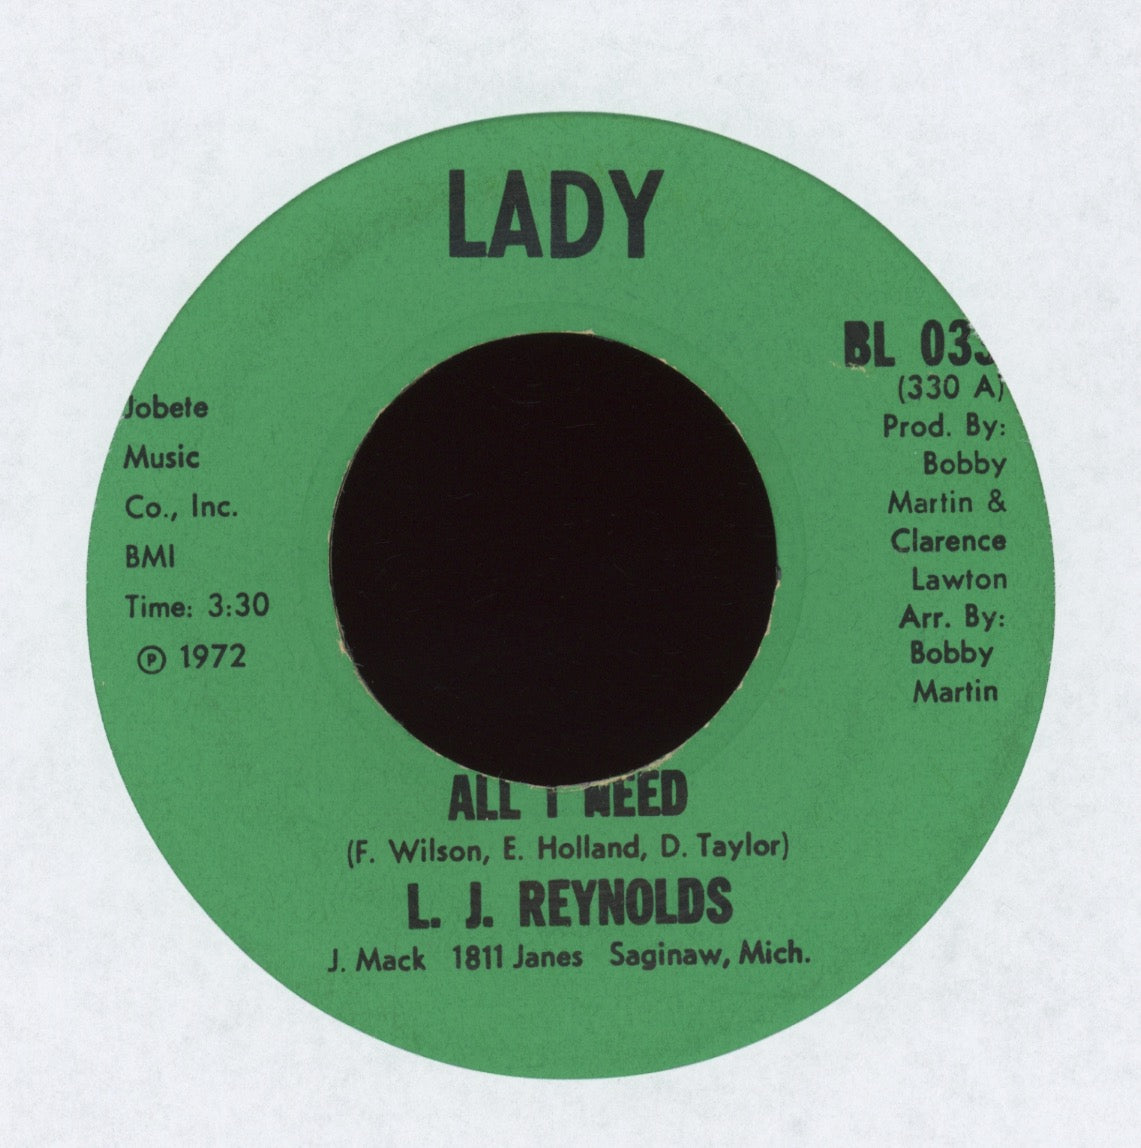 LJ Reynolds - All I Need on Lady